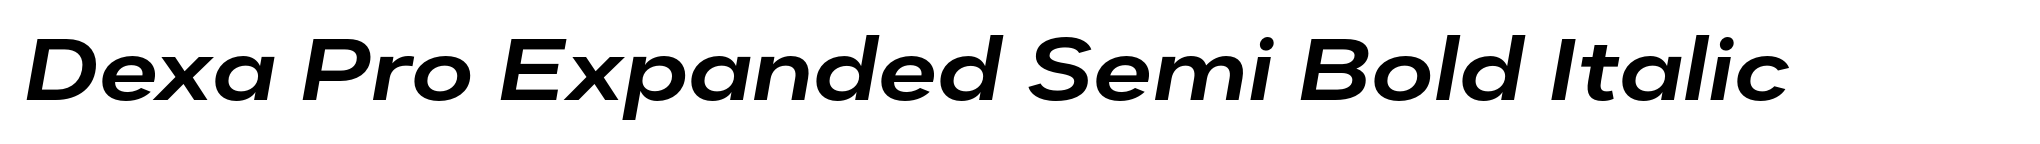 Dexa Pro Expanded Semi Bold Italic image